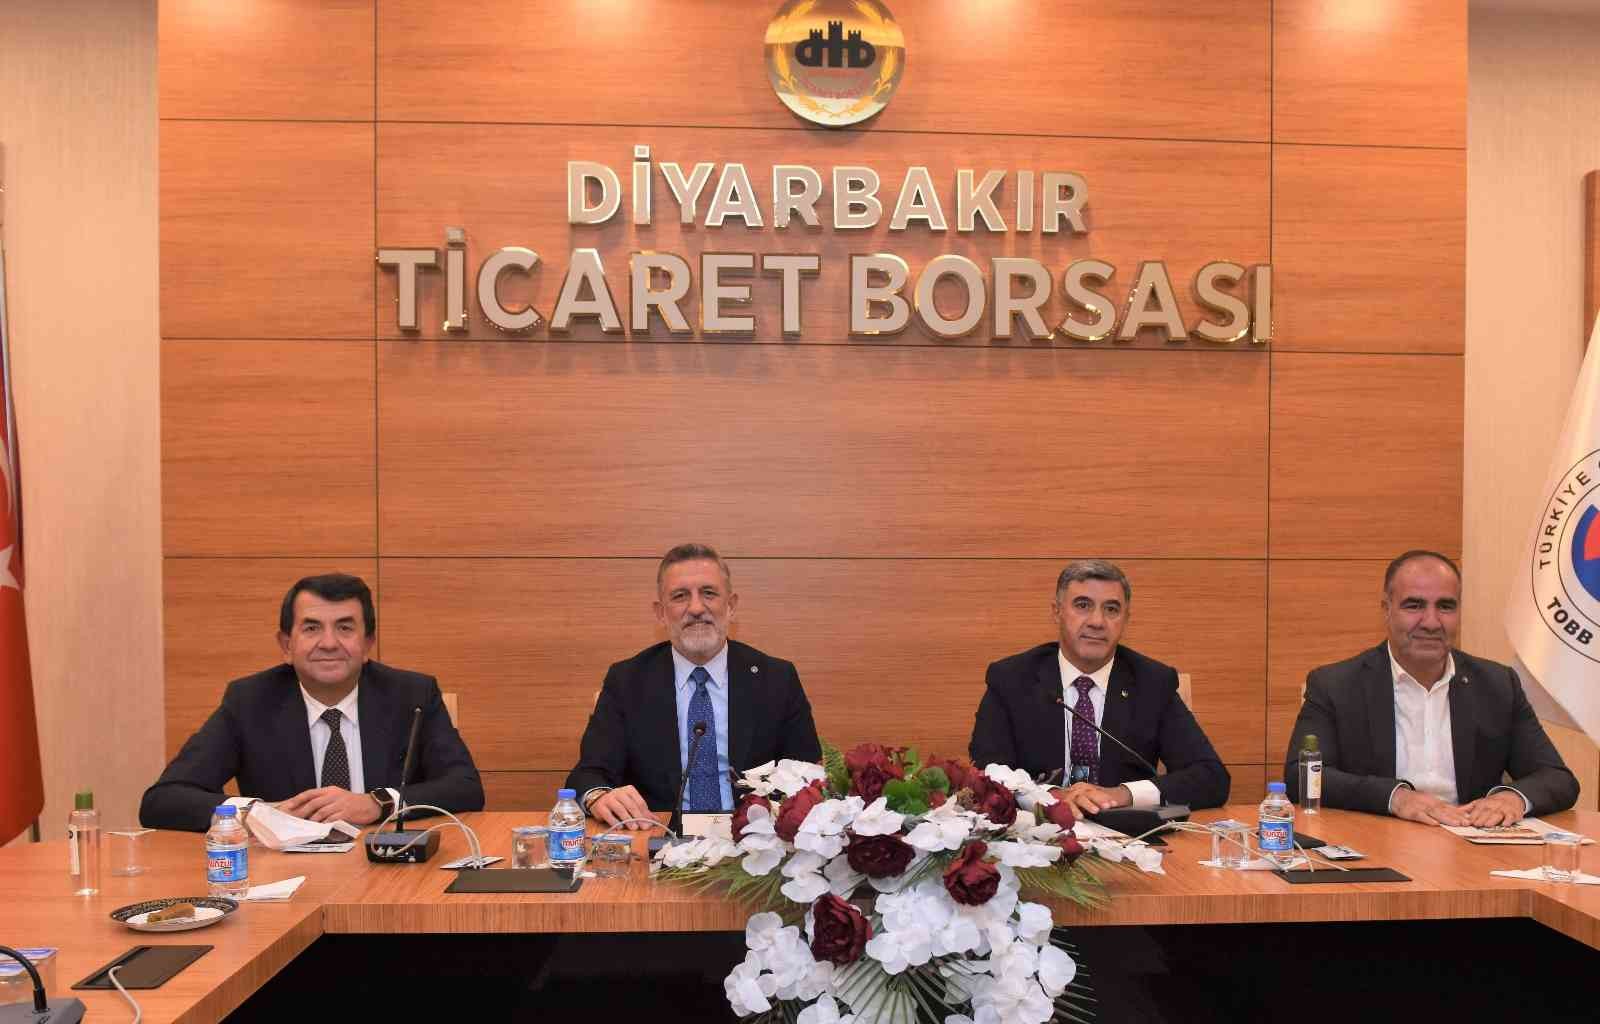 Bursa iş dünyası temsilcileri Diyarbakır’da #bursa